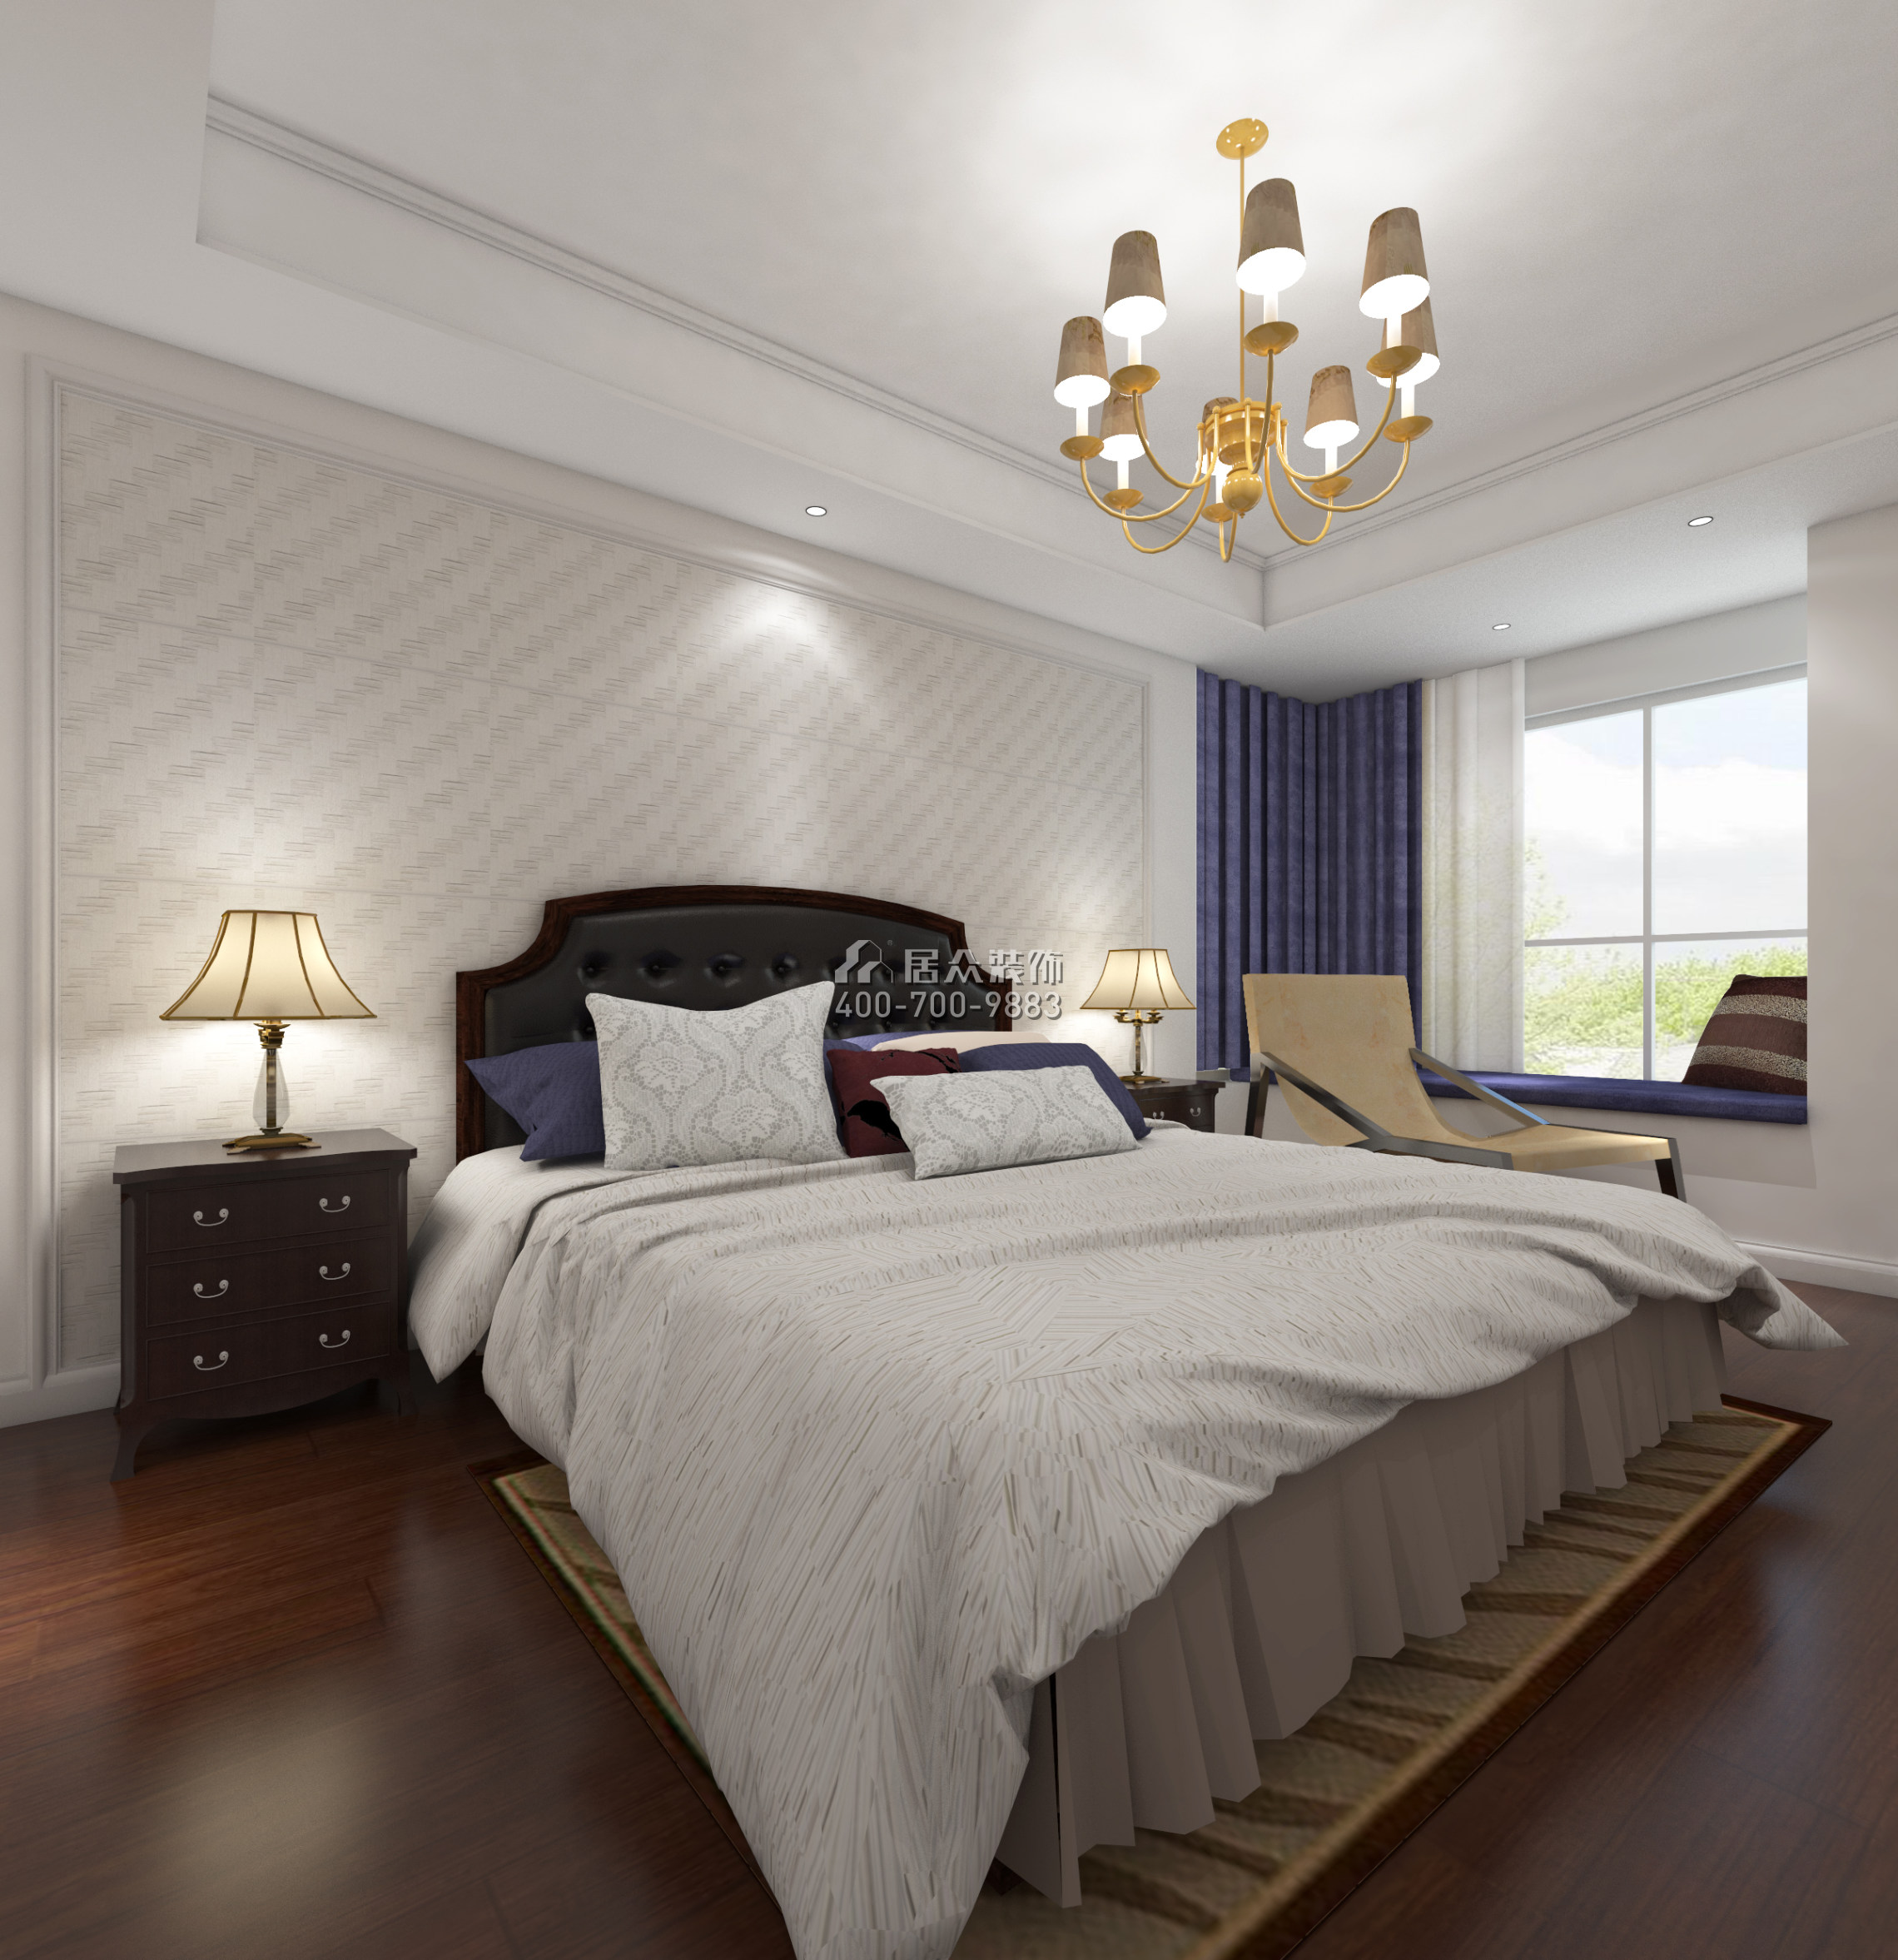 黄埔雅苑一期143平方米美式风格平层户型卧室装修效果图